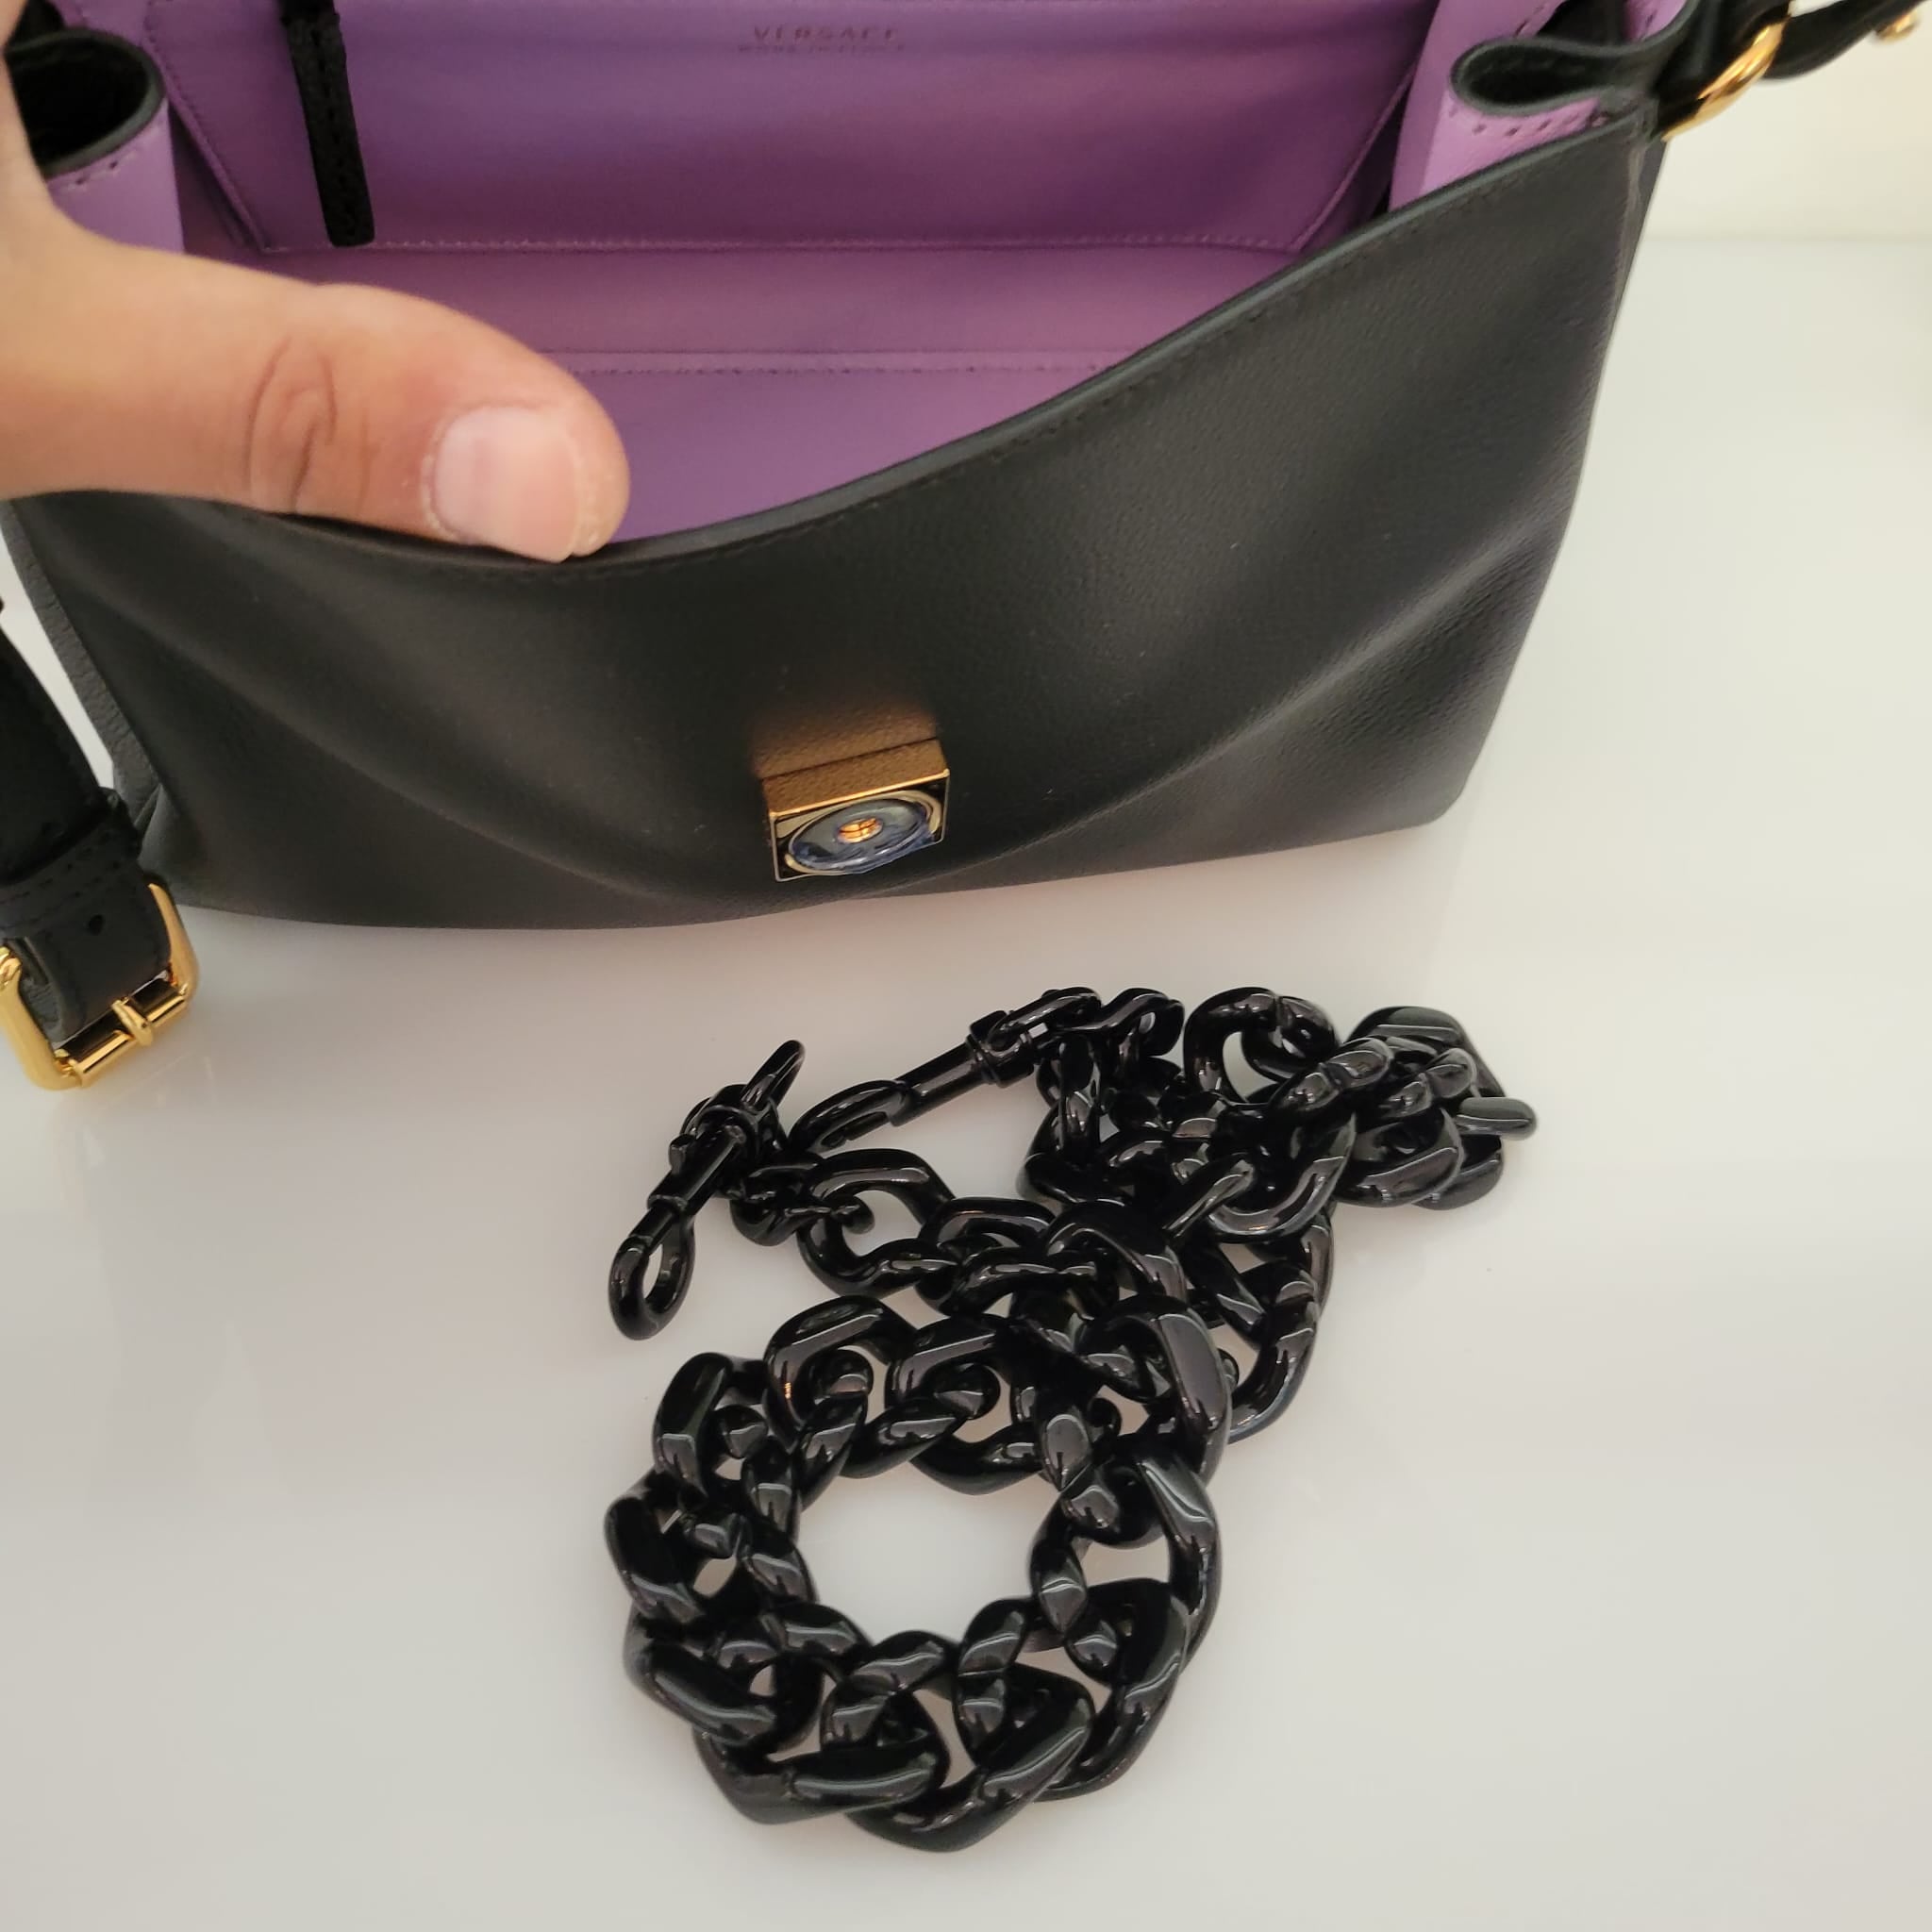 La Medusa Handbag